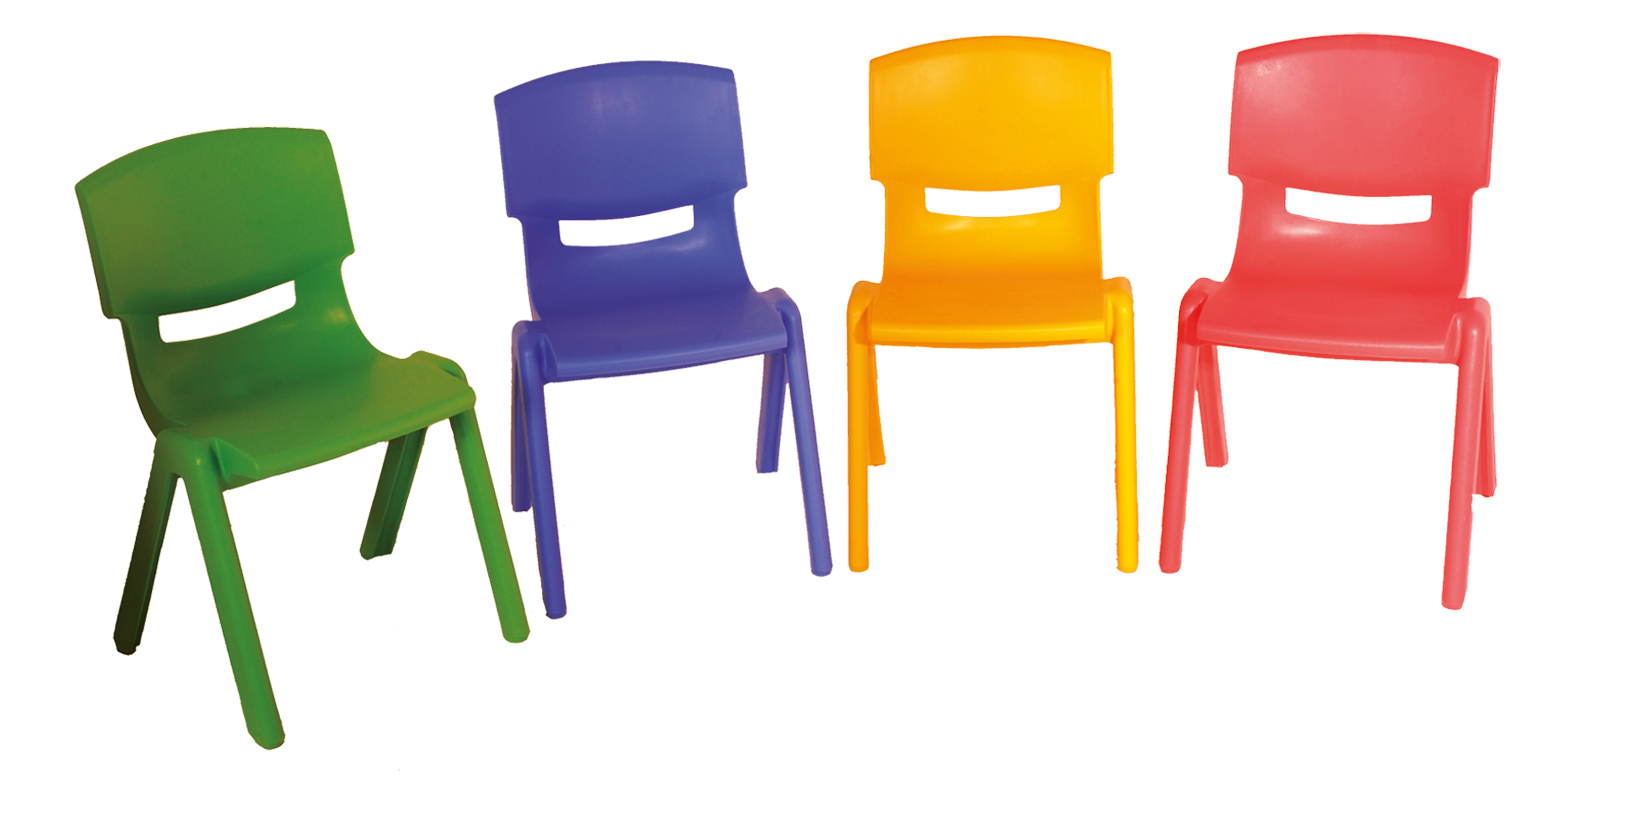 Flexi-Stuhl aus Kunststoff - 5 Sitzhöhen wählbar (SH. 26-44 cm)